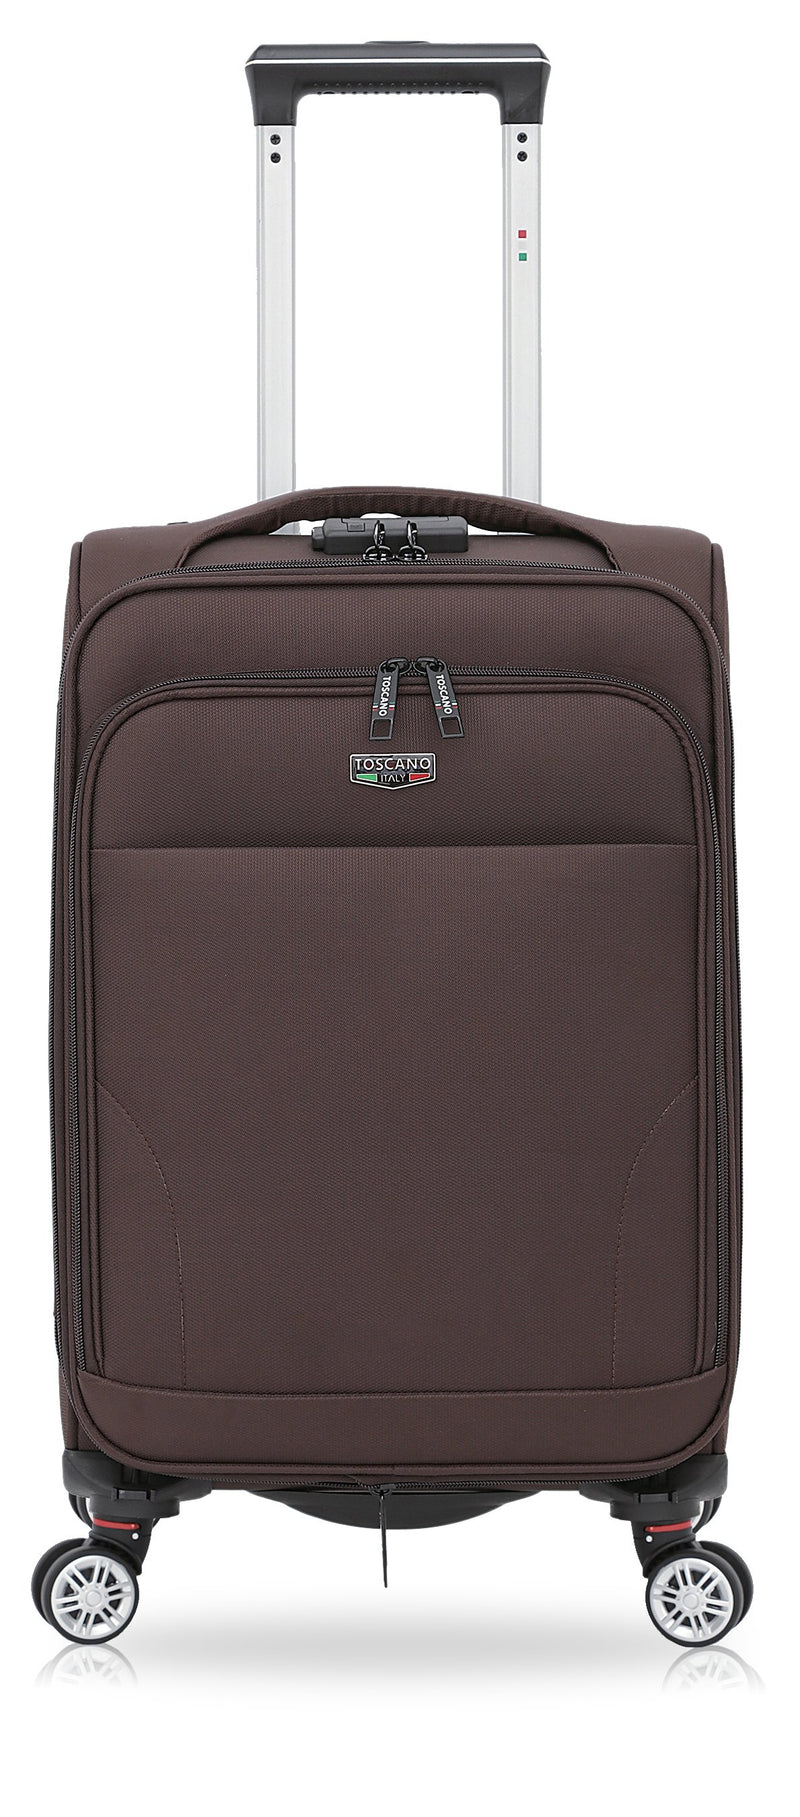 TOSCANO 29-inch Ricerca Large Luggage Suitcase